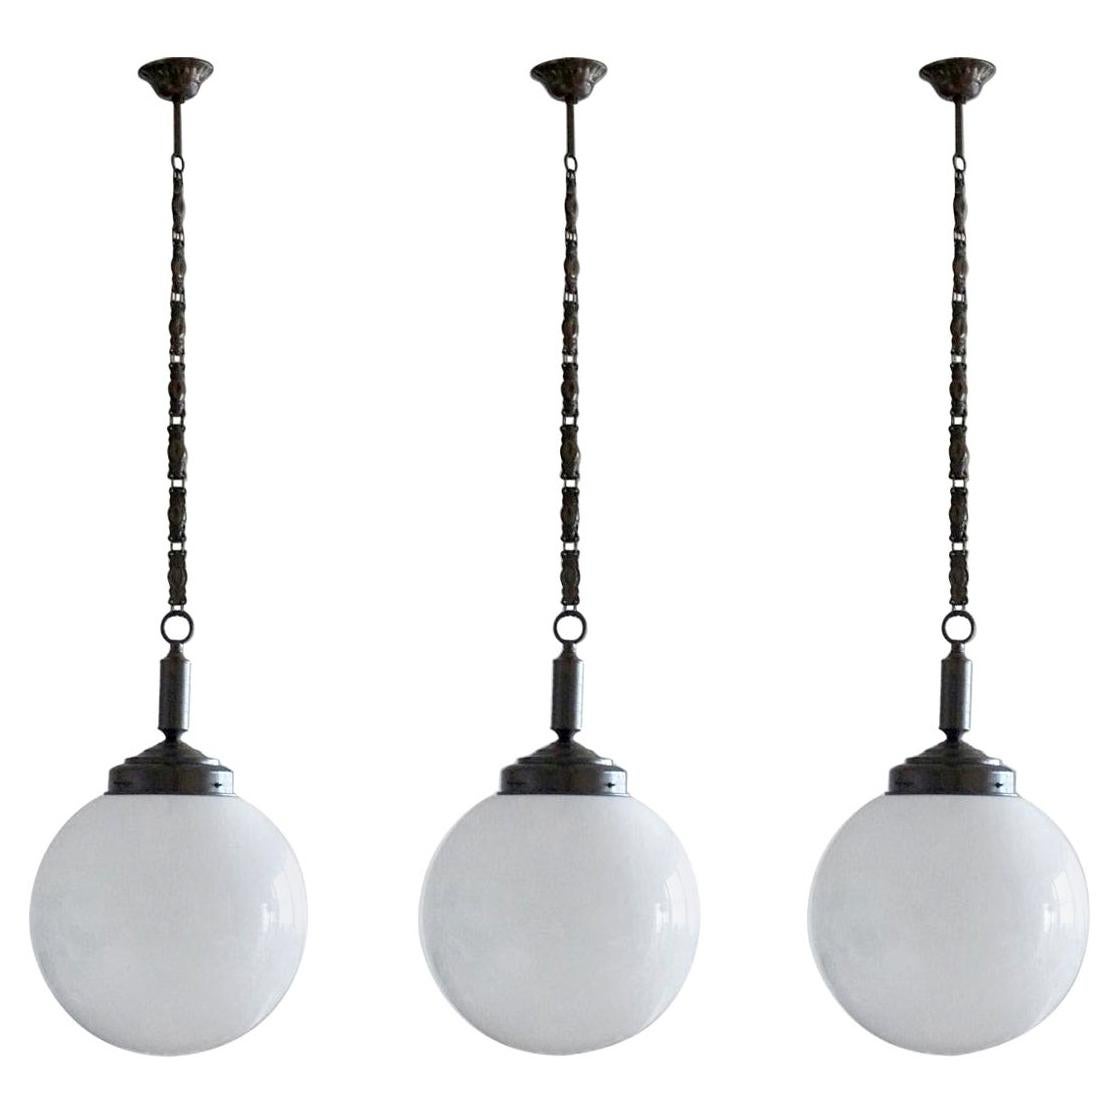 Un ensemble de trois pendentifs boule en verre opalin soufflé à la main avec des montures en laiton bruni, une chaîne et un baldaquin, Italie, 1930-1939.
Une douille d'ampoule Edison E-27 en laiton pour une ampoule de grande taille jusqu'à